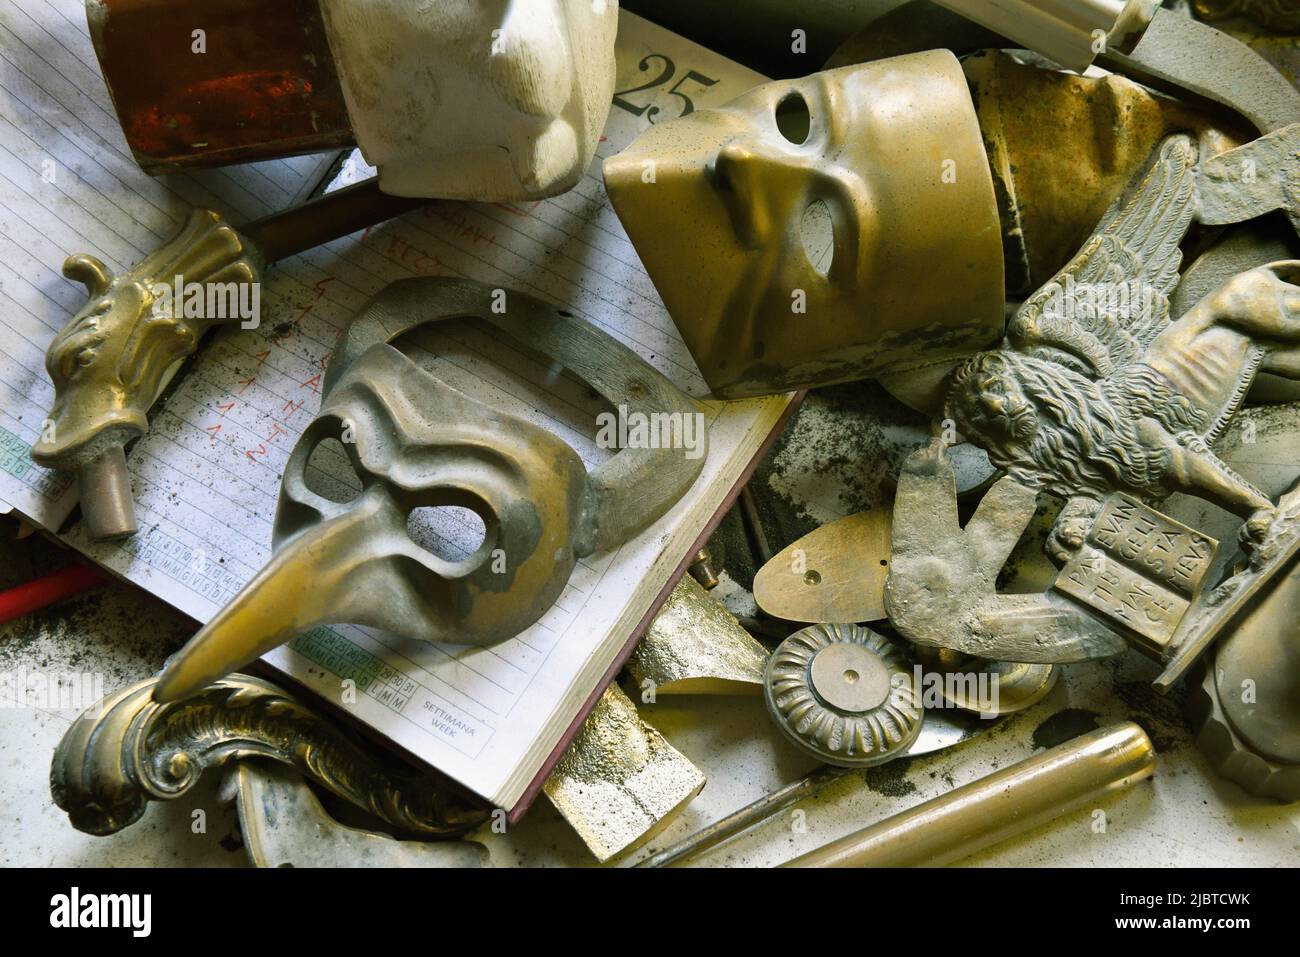 Italien, Venetien, Venedig, von der UNESCO zum Weltkulturerbe erklärt, Cannaregio, Fonderia Artistica Valese, Bronzemasken und Objekte Stockfoto